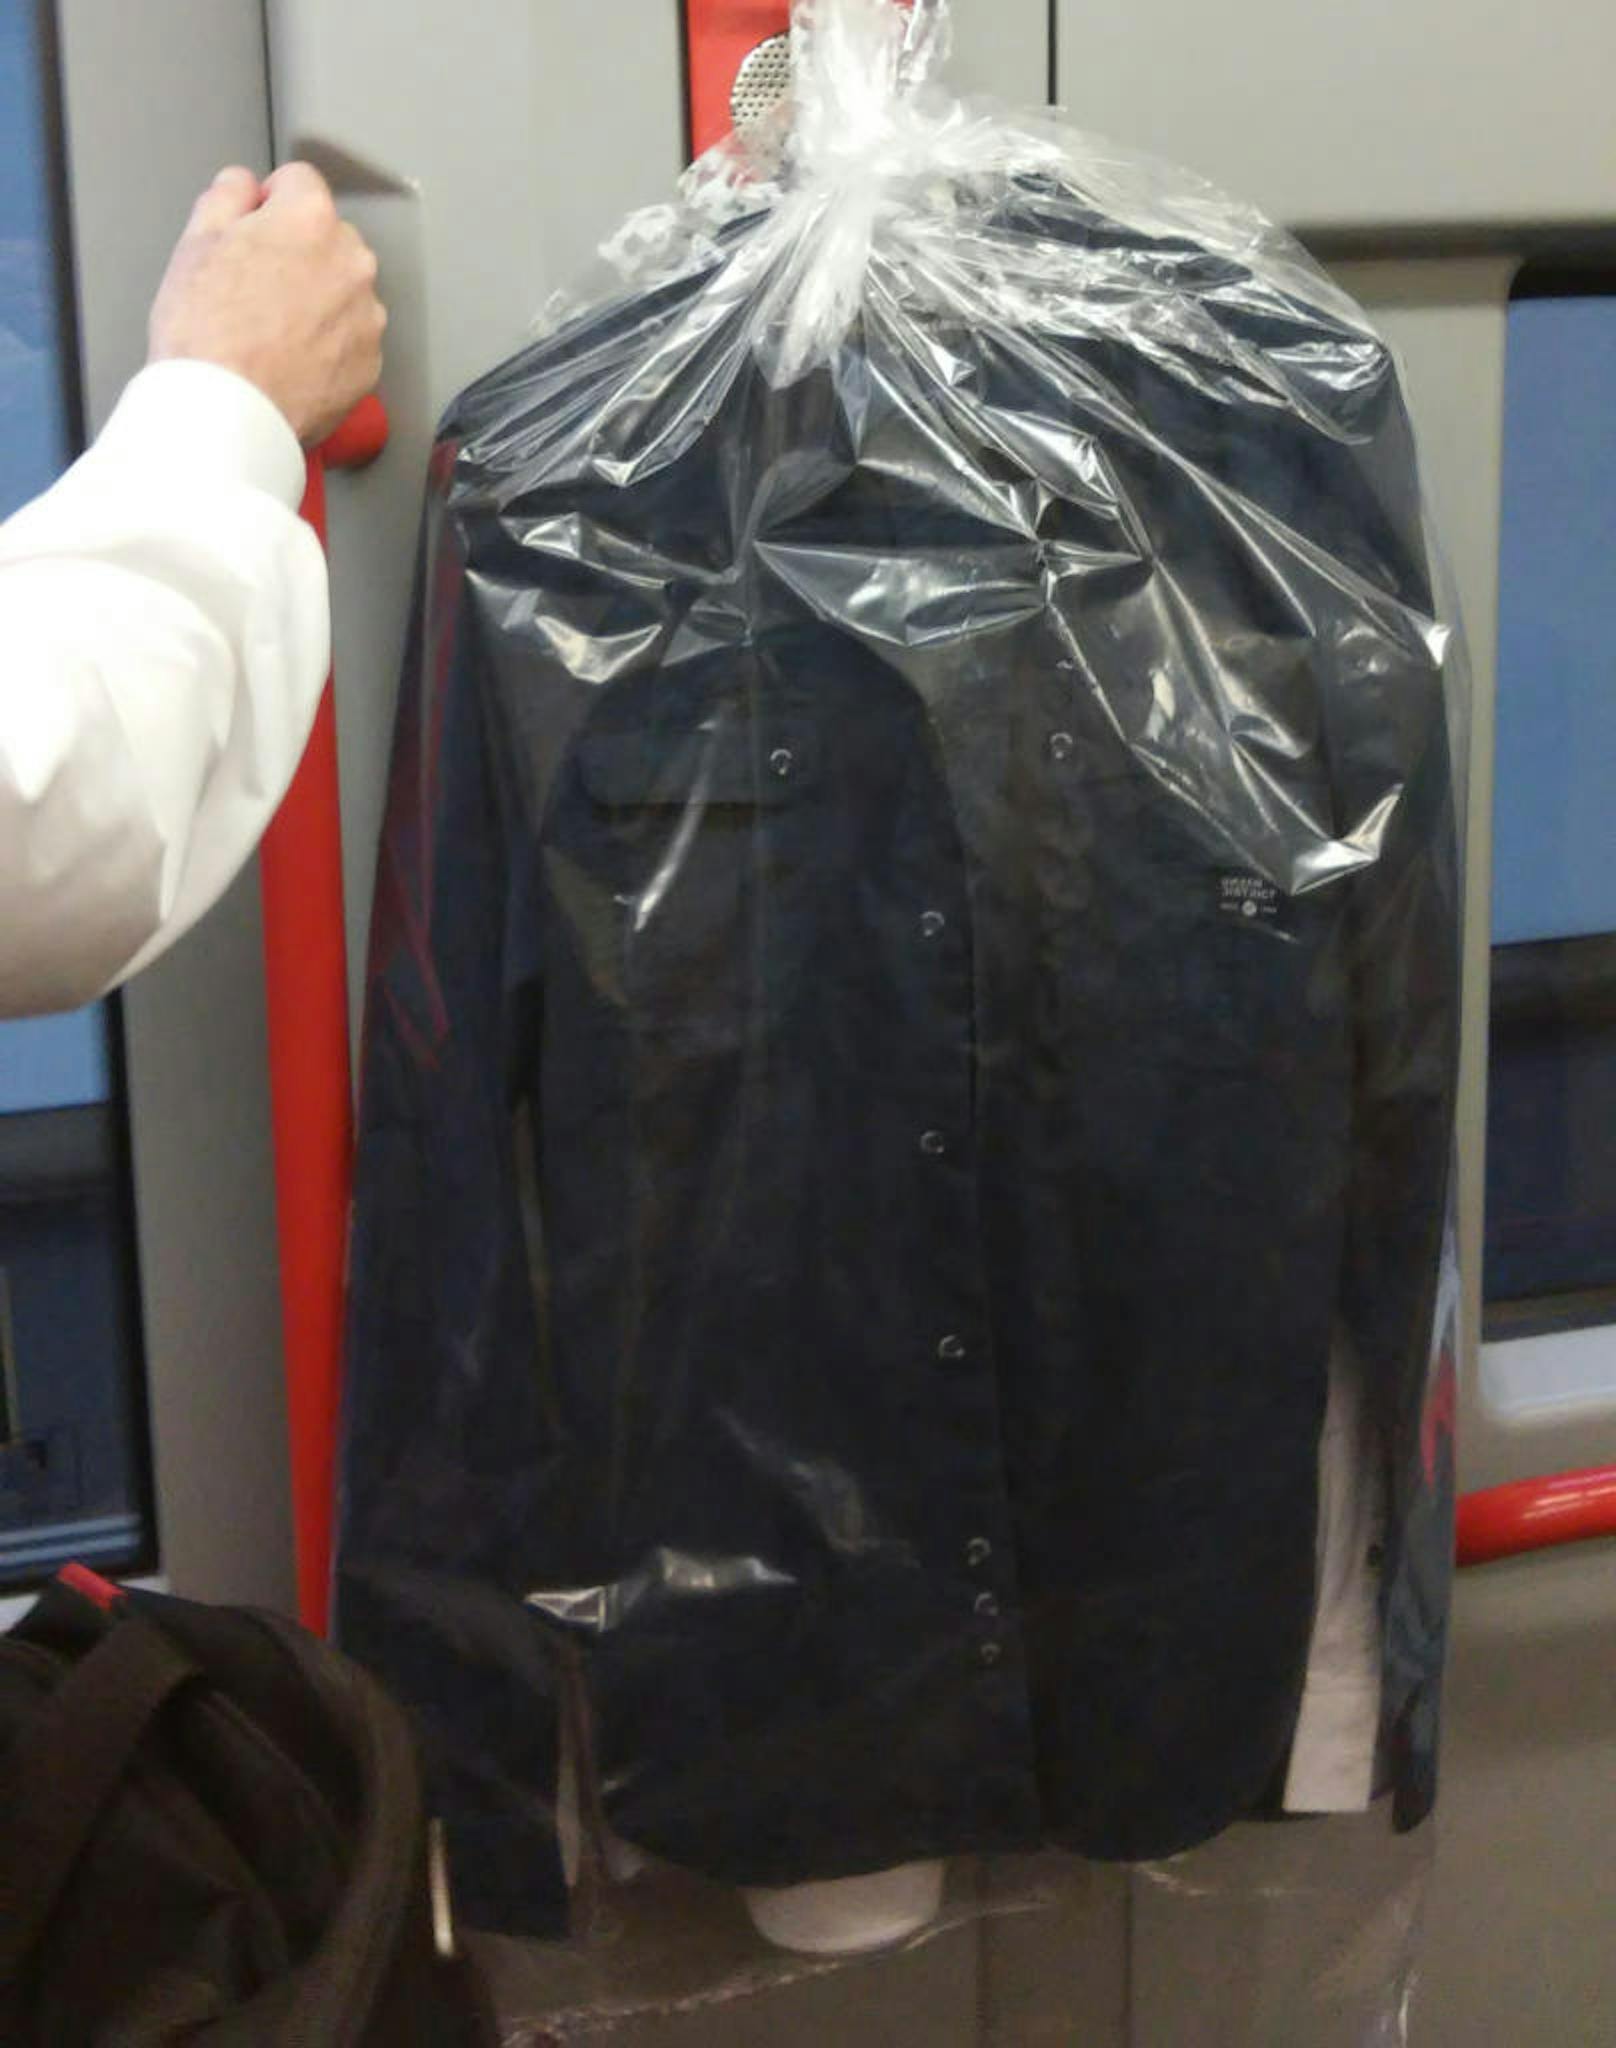 Frisch aus der Reinigung, sorgfältig gebügelt und noch im Plastik verpackt hängt diese Kleidung in der Wiener U-Bahn. Das Problem daran?